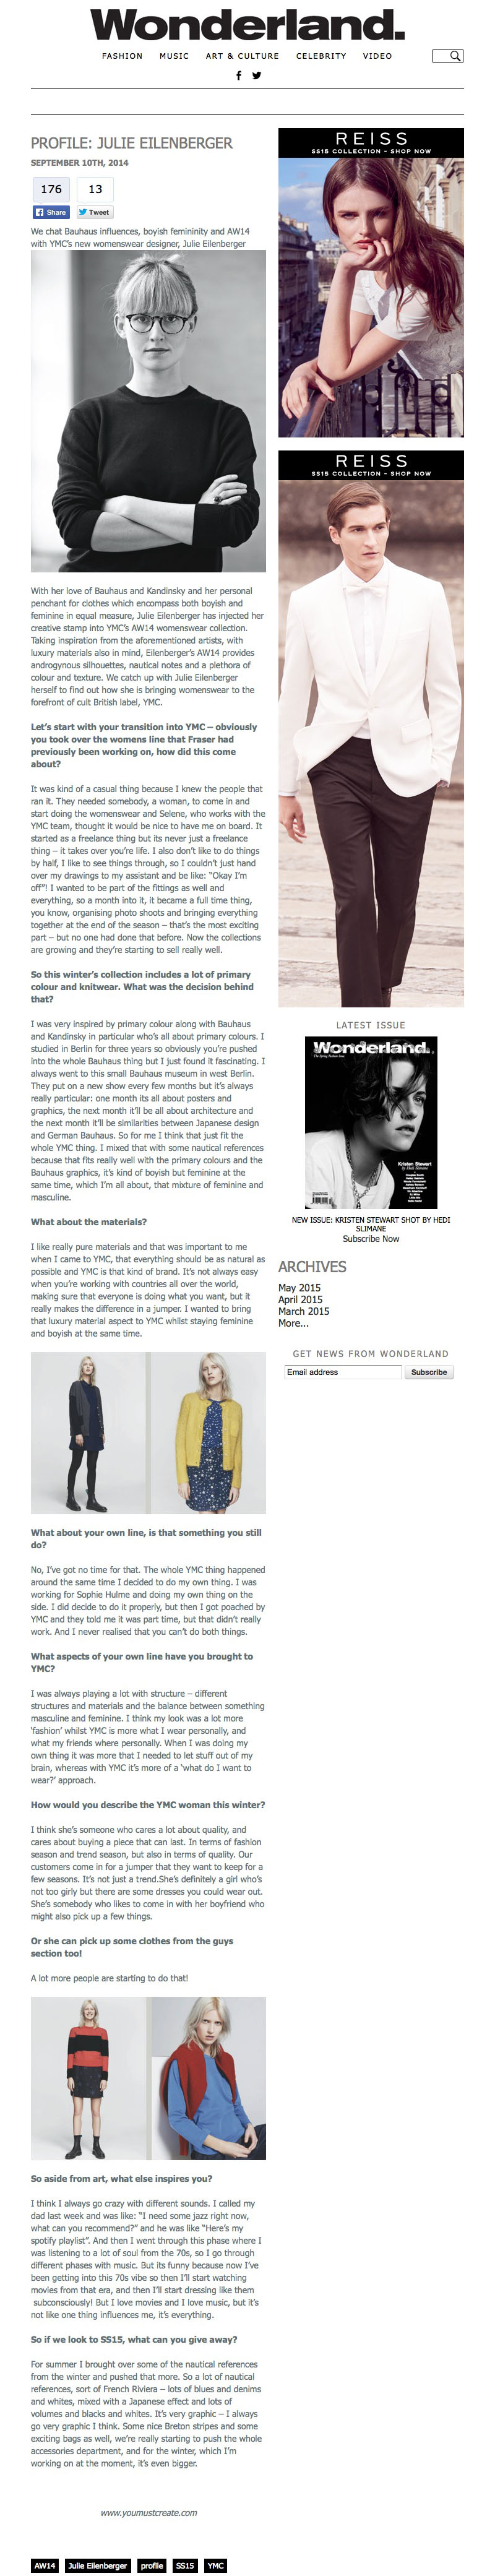 Profile: Julie Eilenberger | Wonderland Magazine - Wonderland Magazine